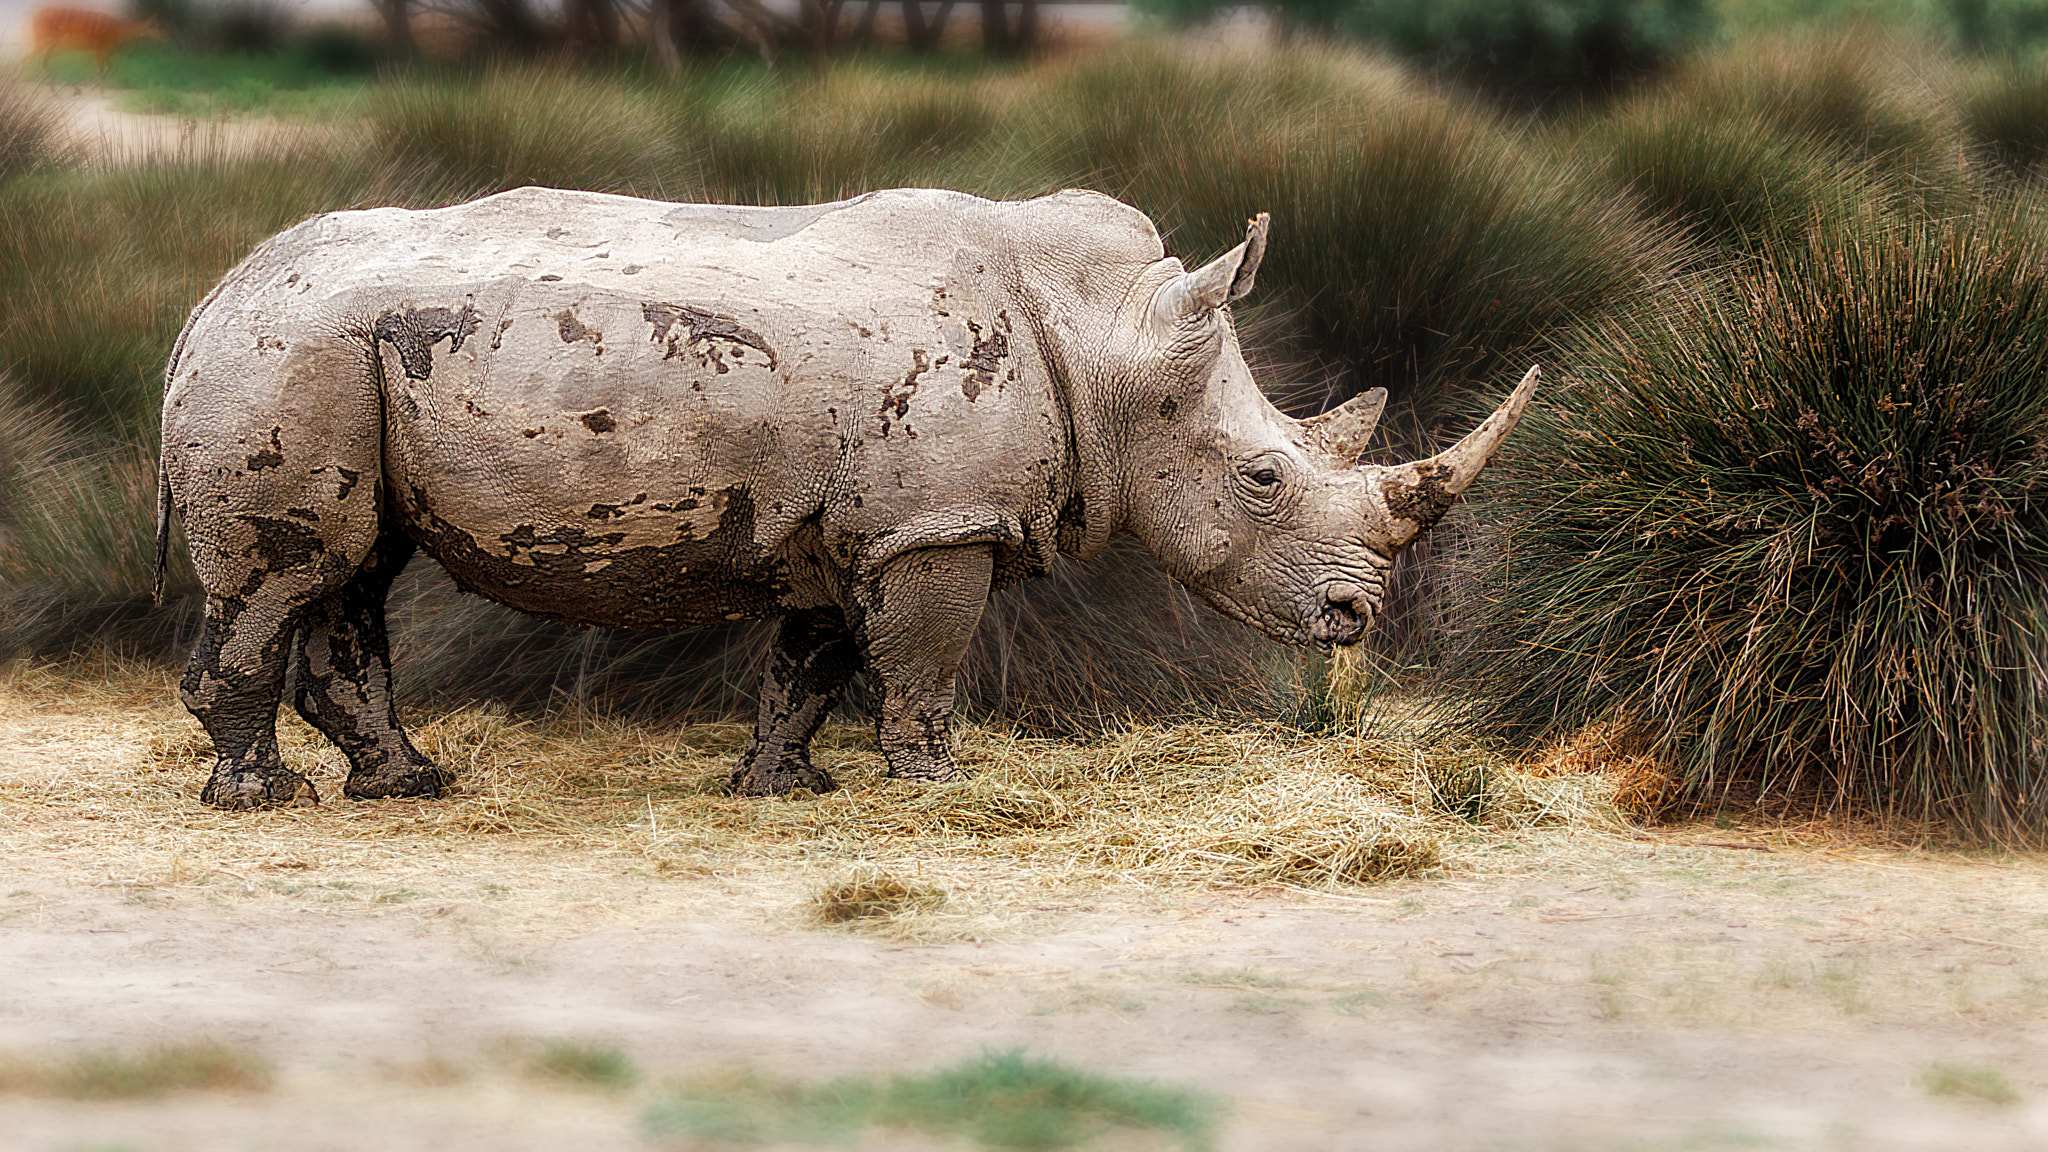 Canon EOS 80D + Canon EF 70-200mm F4L USM sample photo. Rinoceronte pastando (rhino grazing) photography